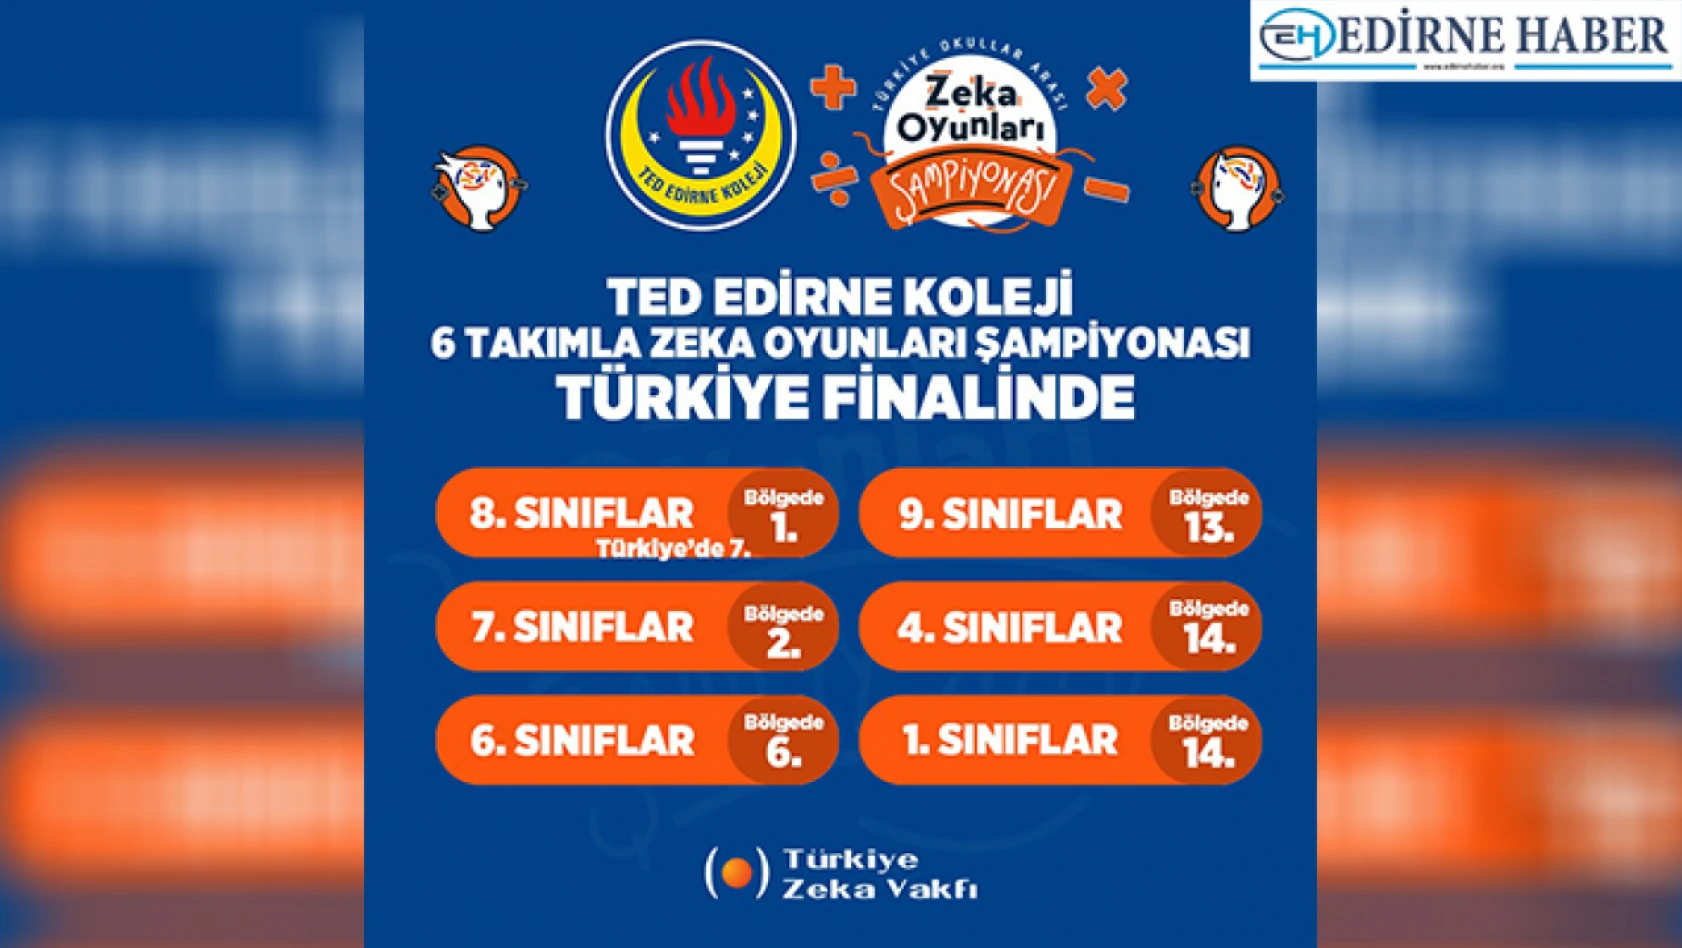 TED Edirne Koleji Zeka Oyunları Şampiyonası Finalinde